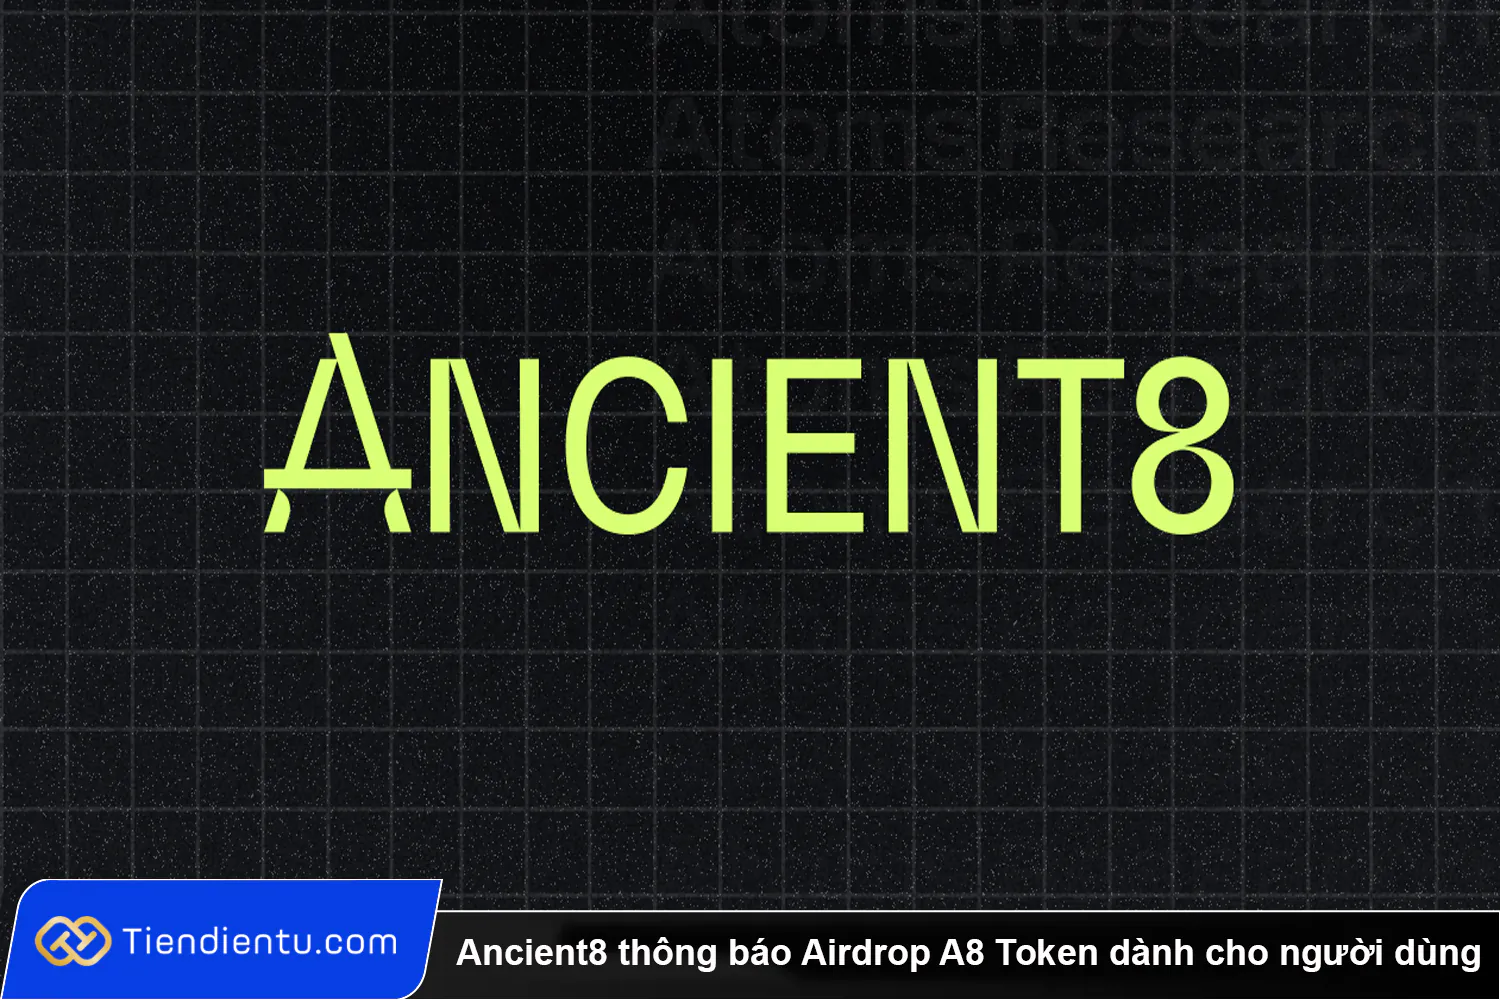 Ancient8 thong bao Airdrop A8 Token danh cho nguoi dung